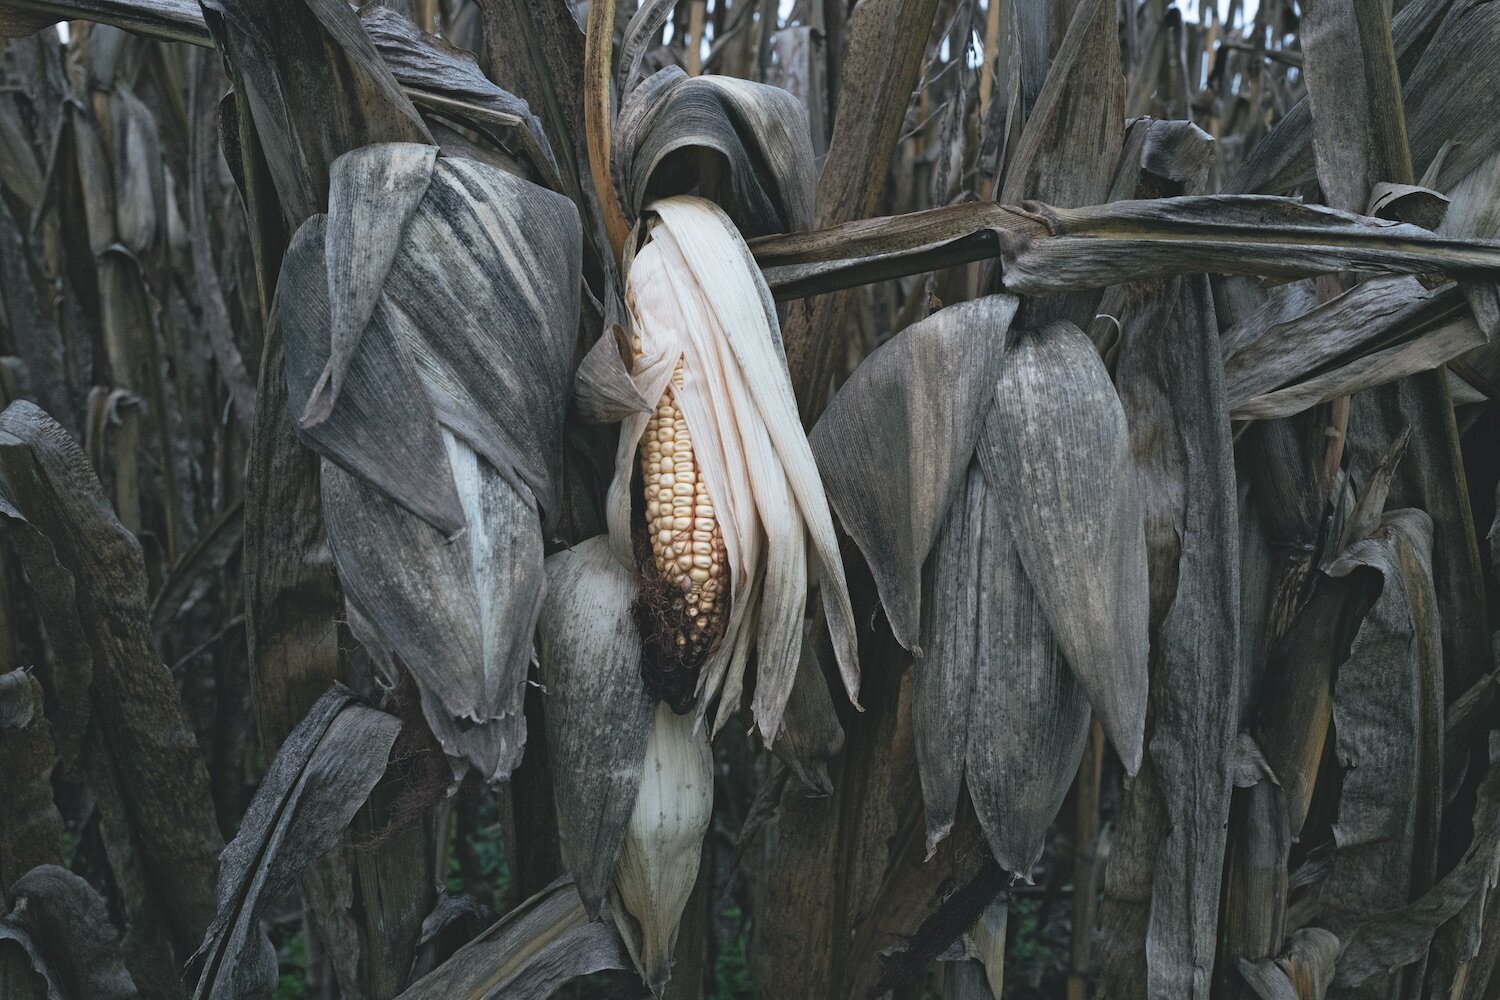  Corn, 2017 